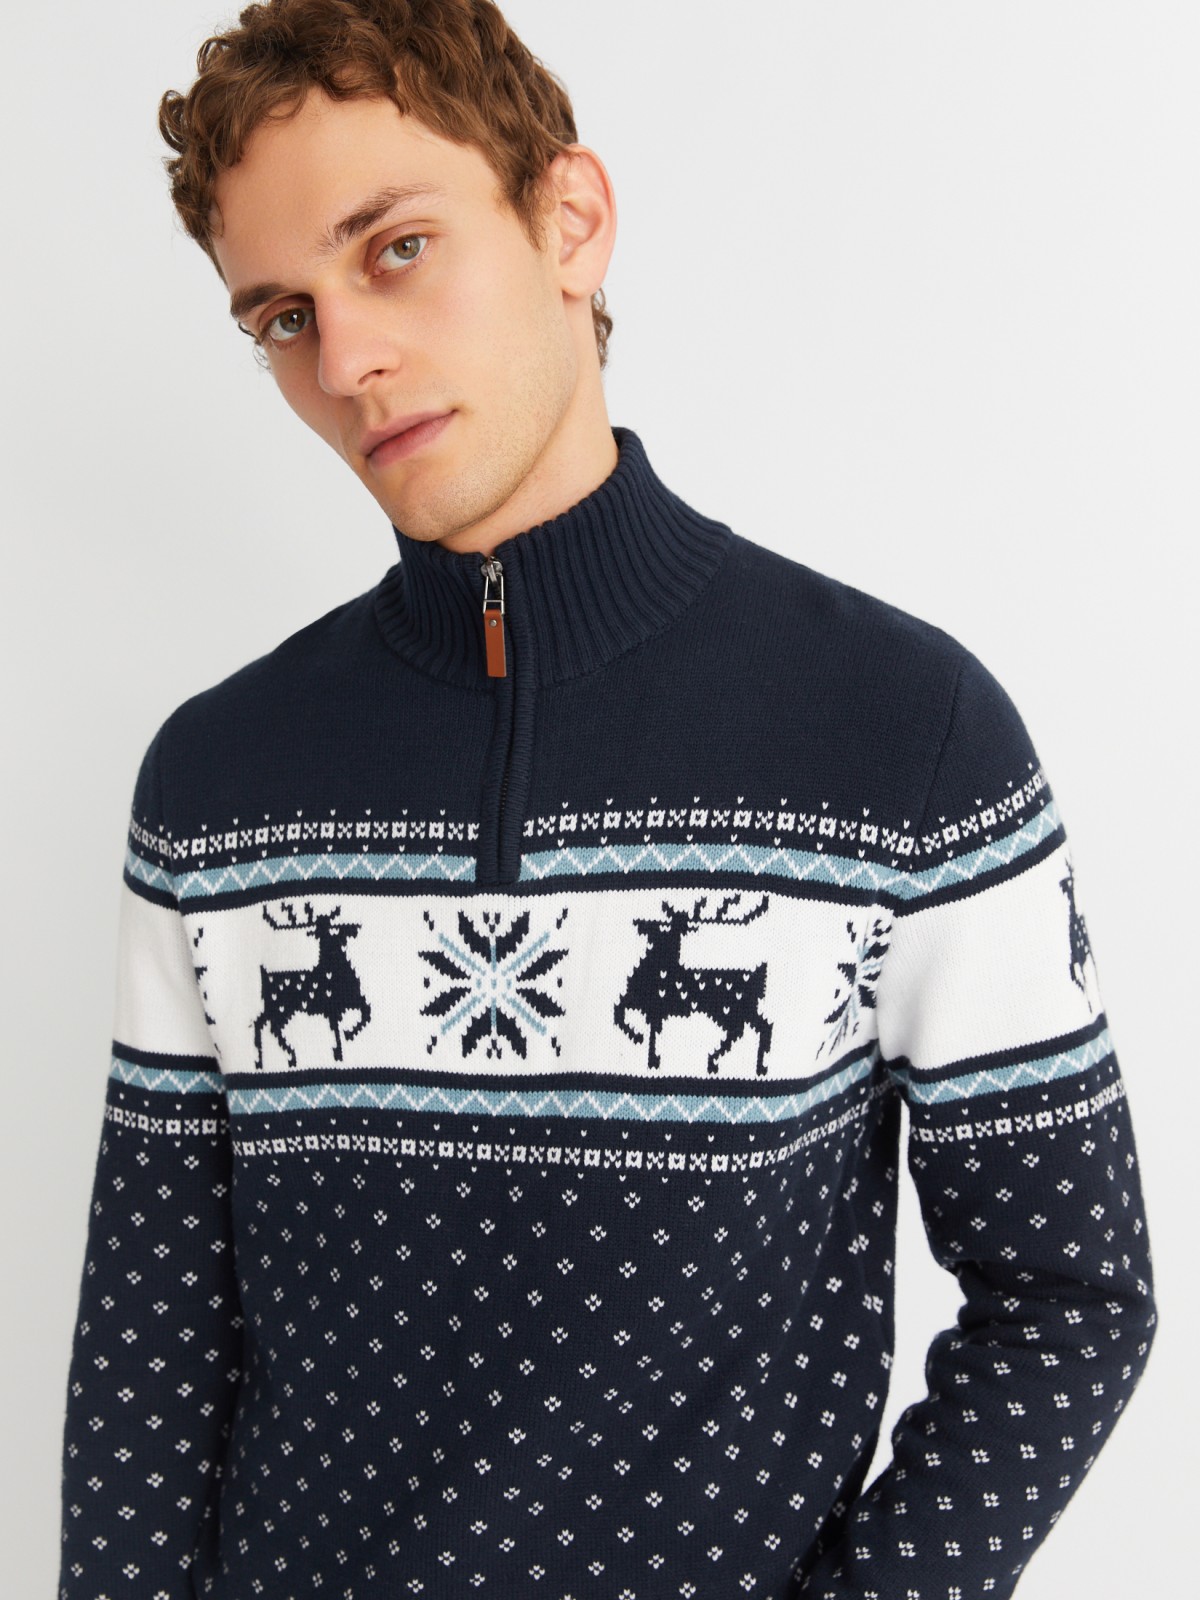 Вязаный свитер с воротником на молнии и скандинавским узором zolla 013436823043, цвет синий, размер M - фото 5